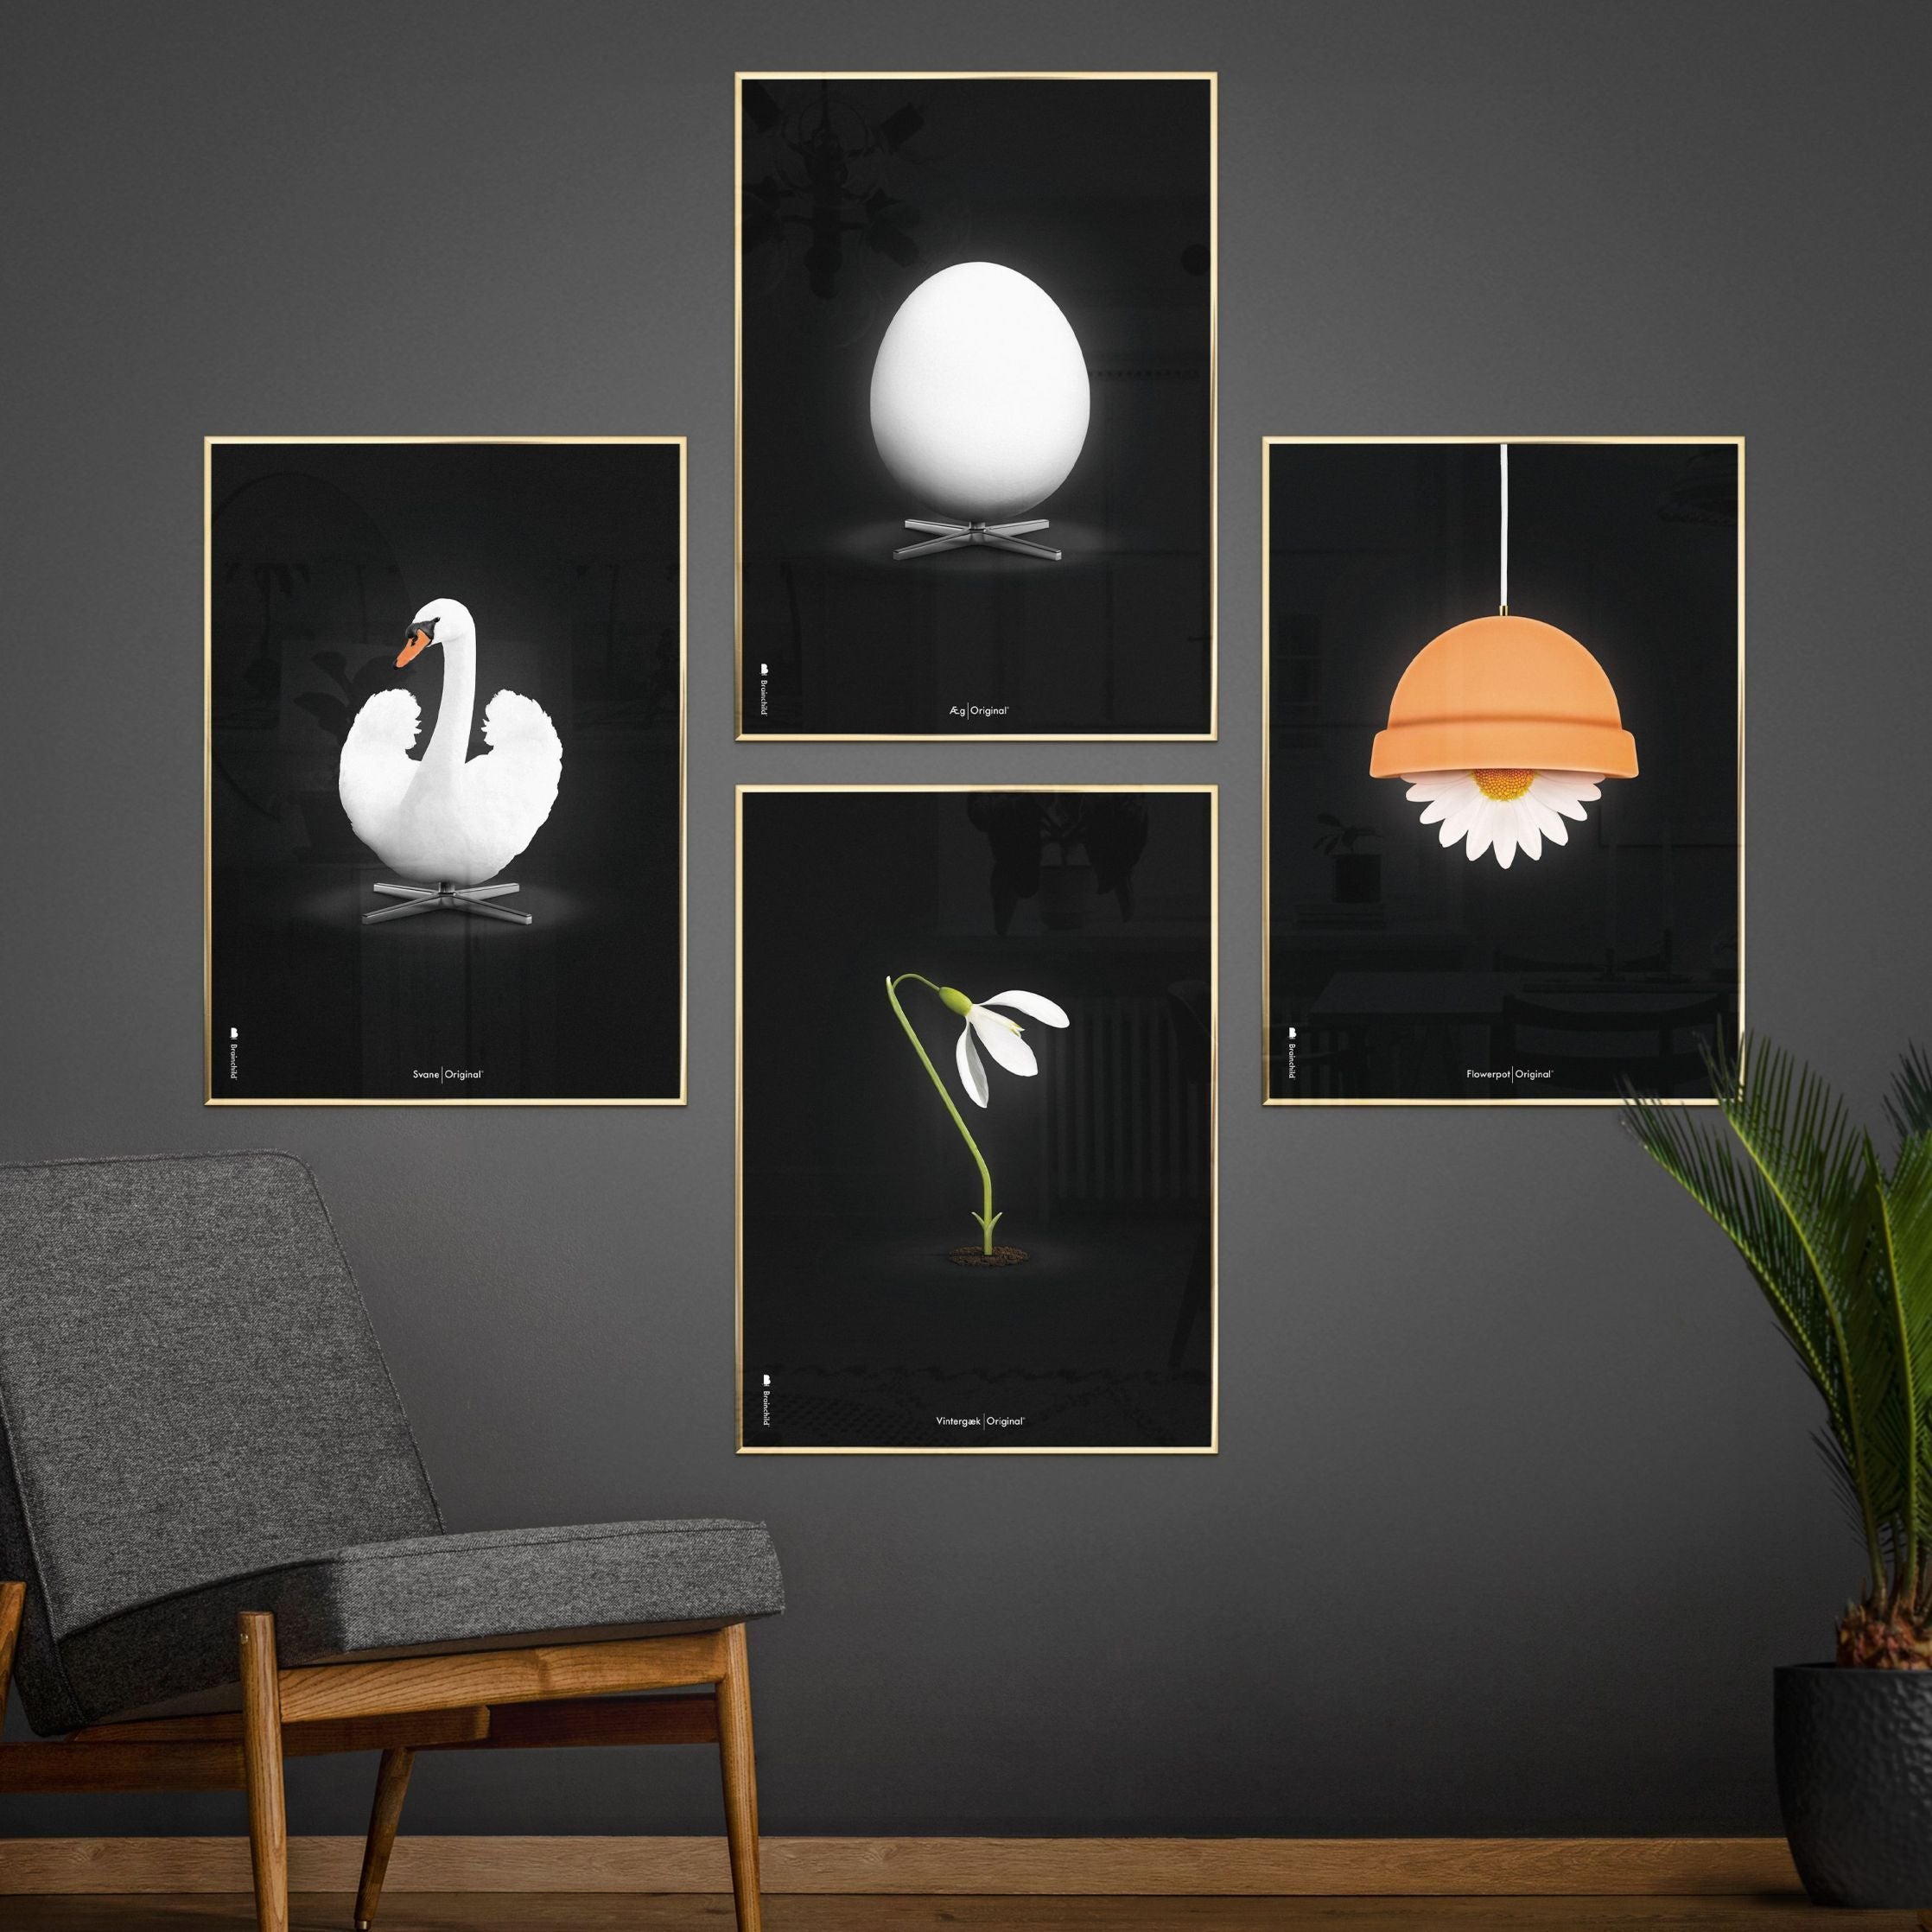 Poster classico di SnowDrop Brainchild, cornice in legno chiaro 30x40 cm, sfondo nero